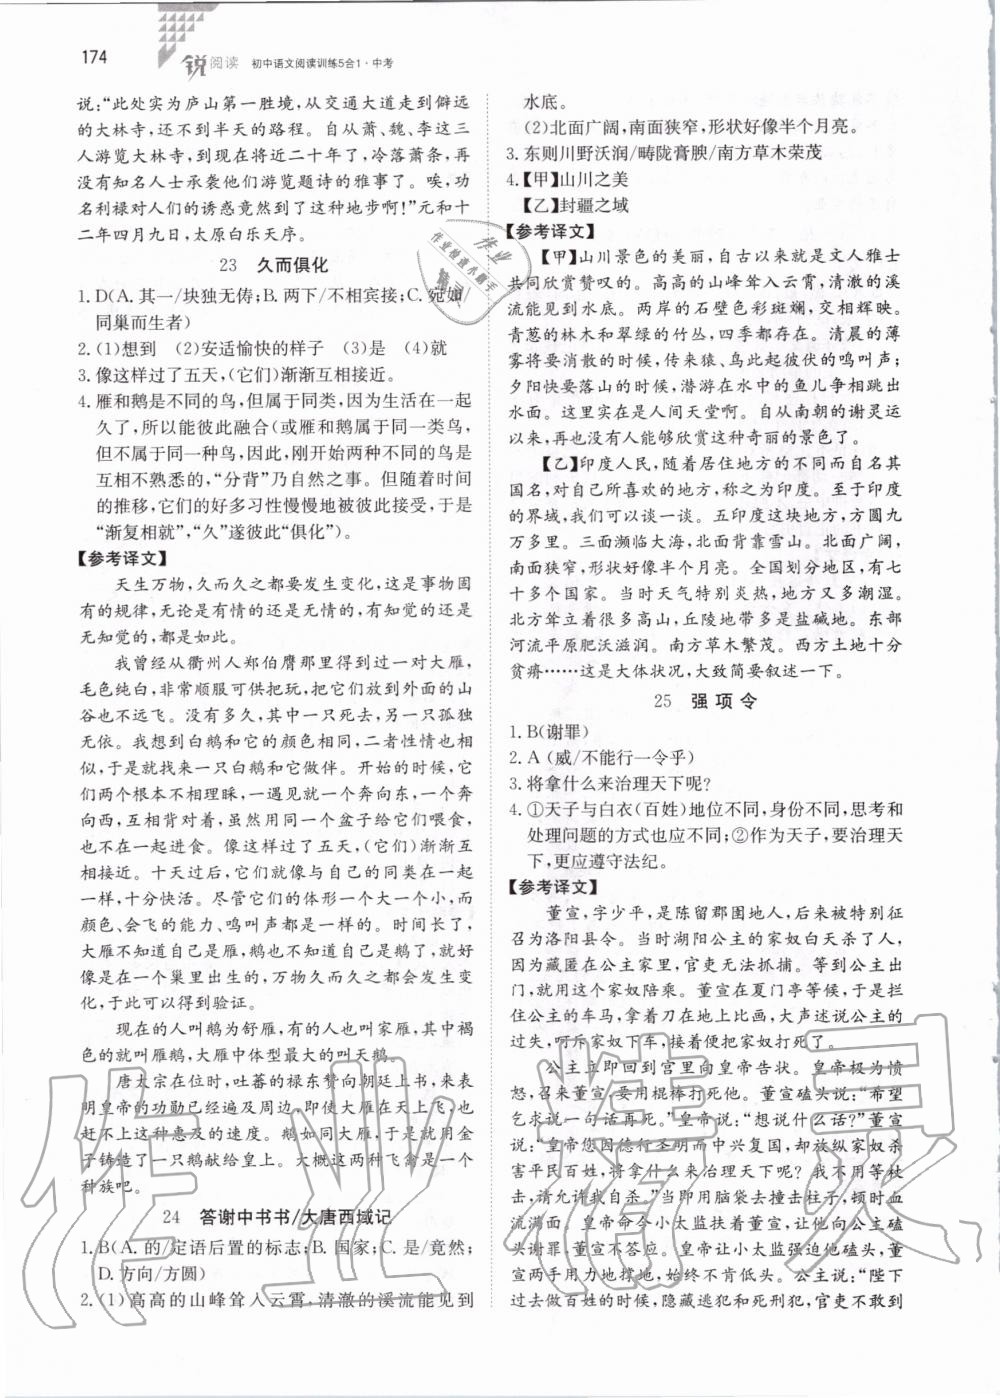 2019年锐阅读初中语文阅读训练5合1中考 第20页